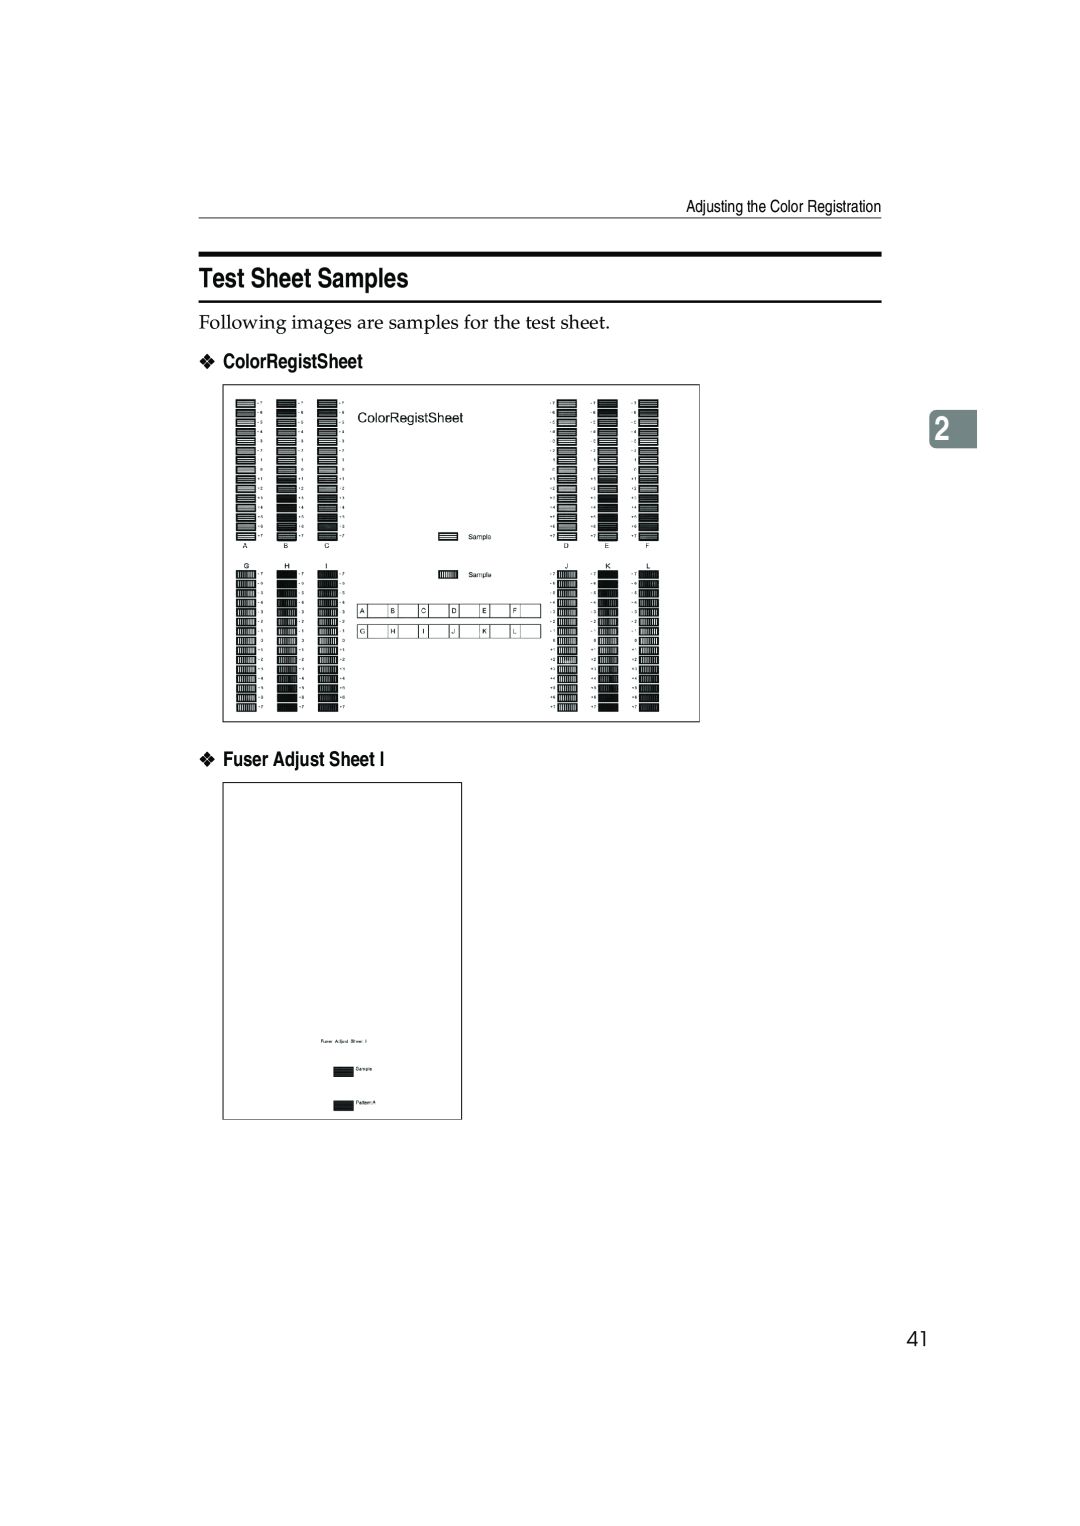 Ricoh AP3800C Test Sheet Samples, ColorRegistSheet, Fuser Adjust Sheet, Adjusting the Color Registration 